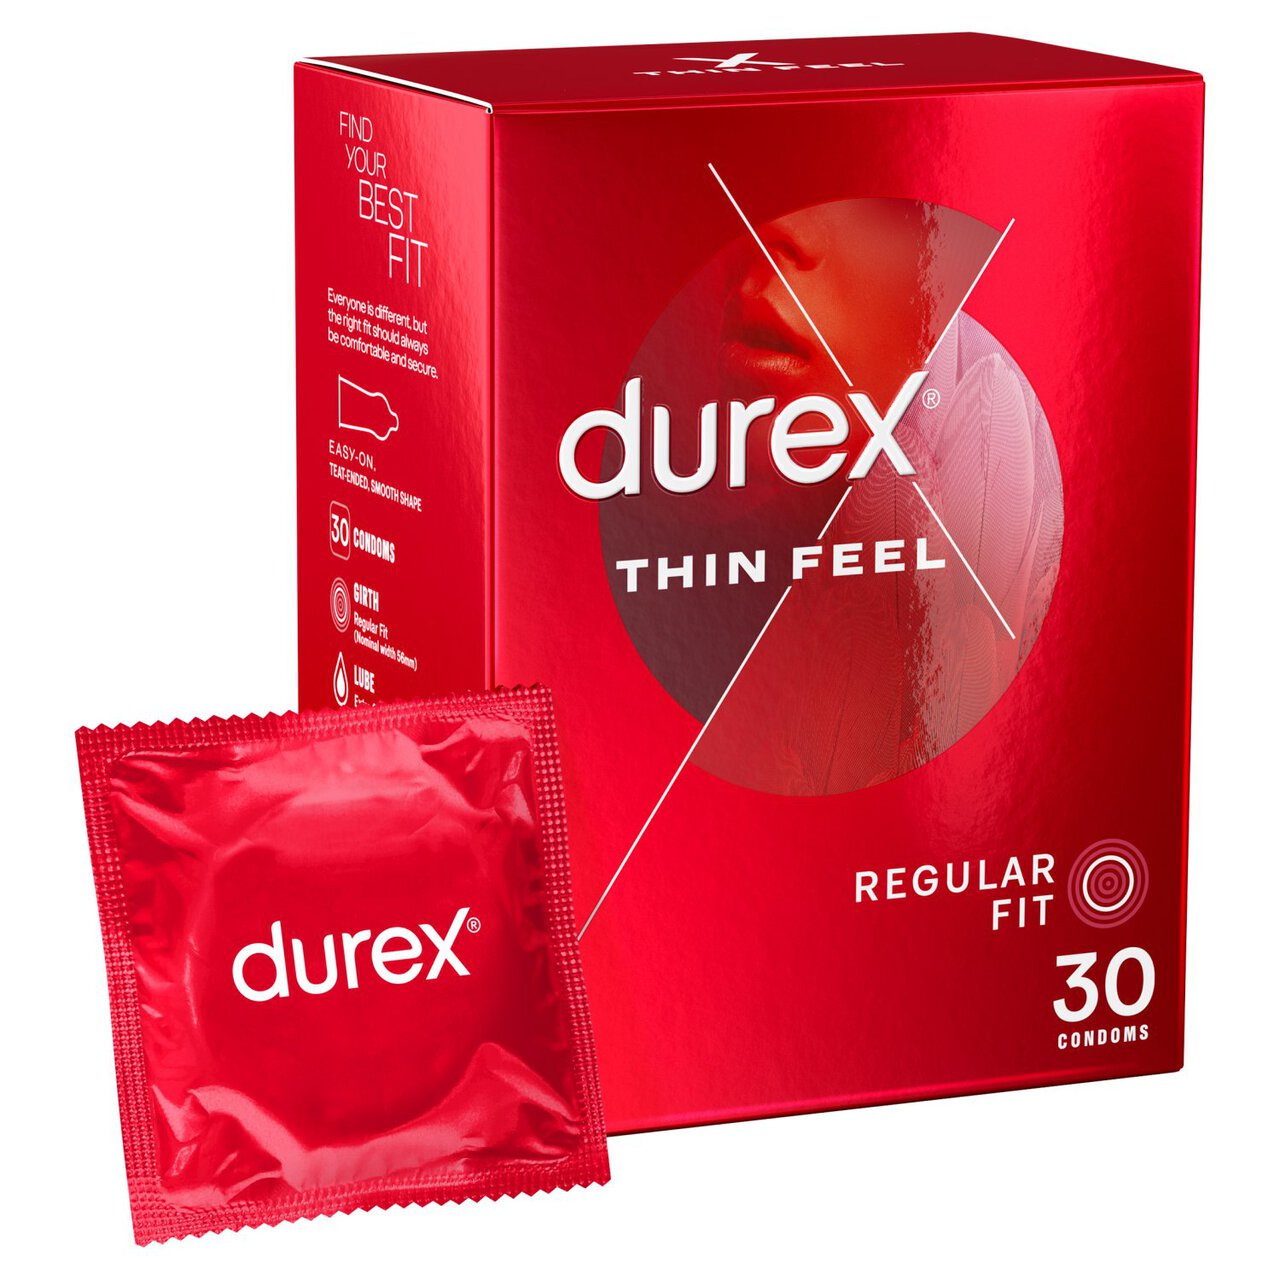 Durex Thin Feel 30 Condoms 30 per pack